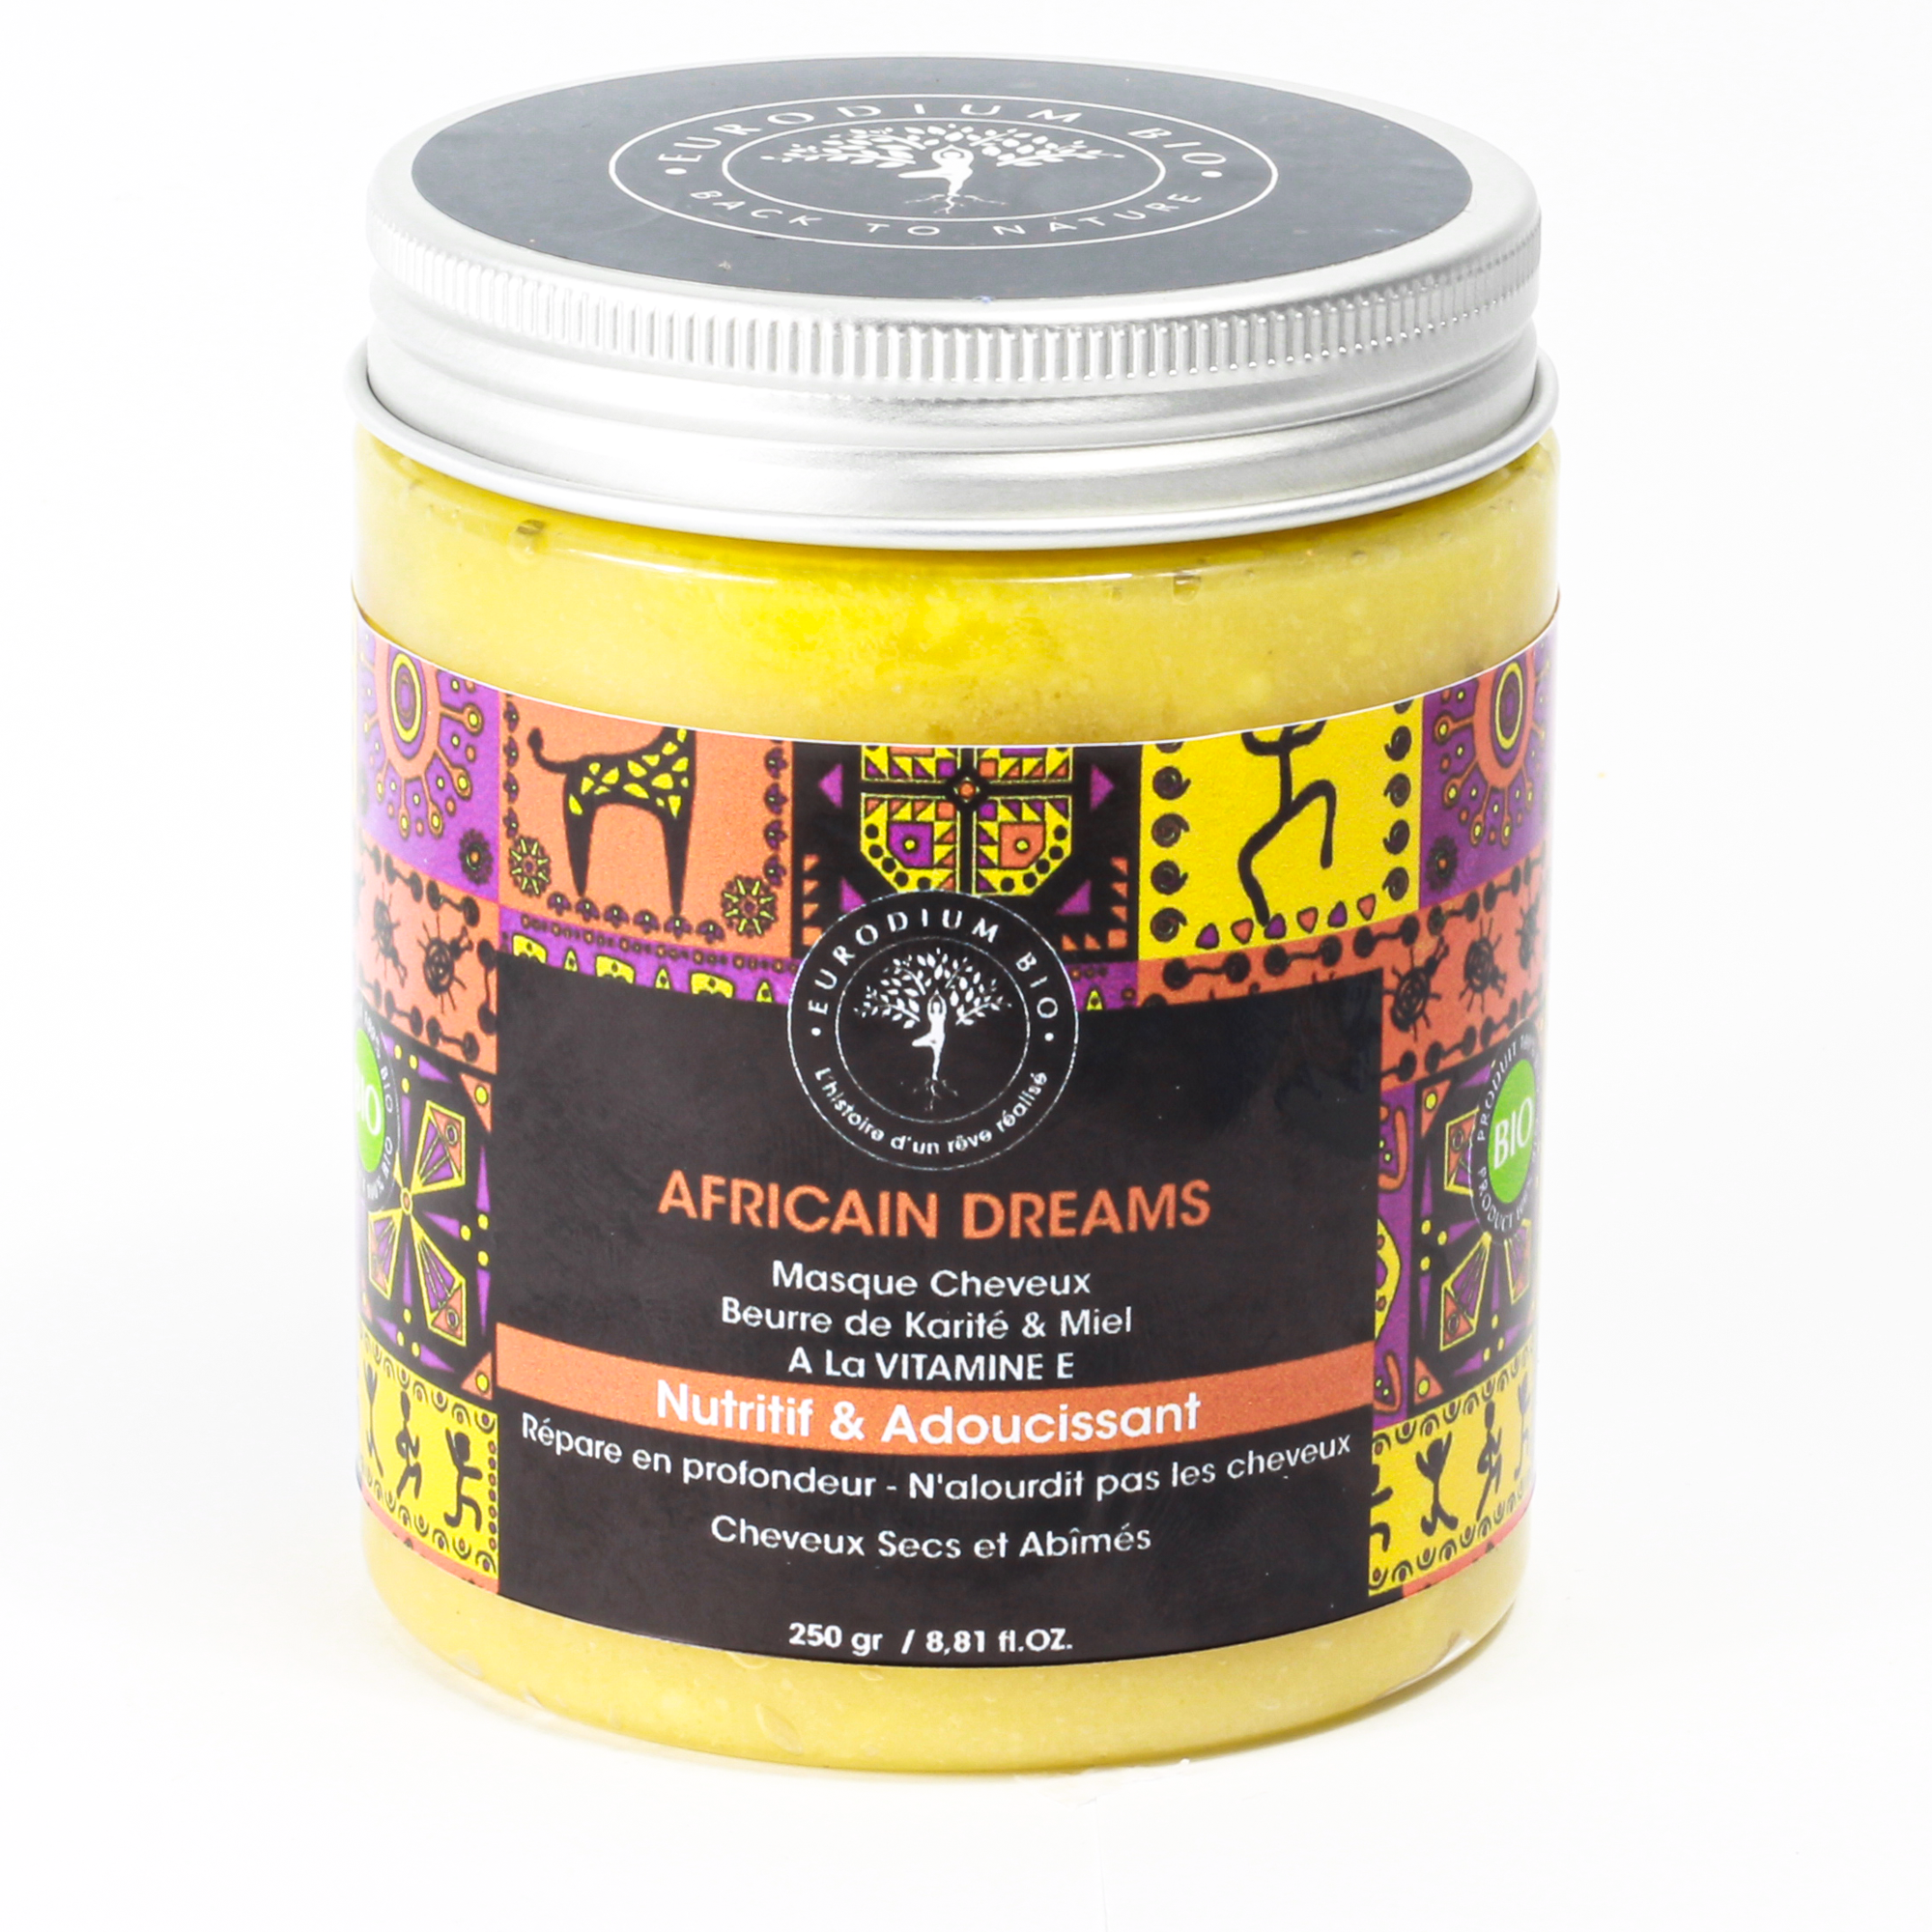 AFRICAIN DREAMS Masque Cheveux Beurre de Karité & Miel A La VITAMINE E -  Eurodiumbio